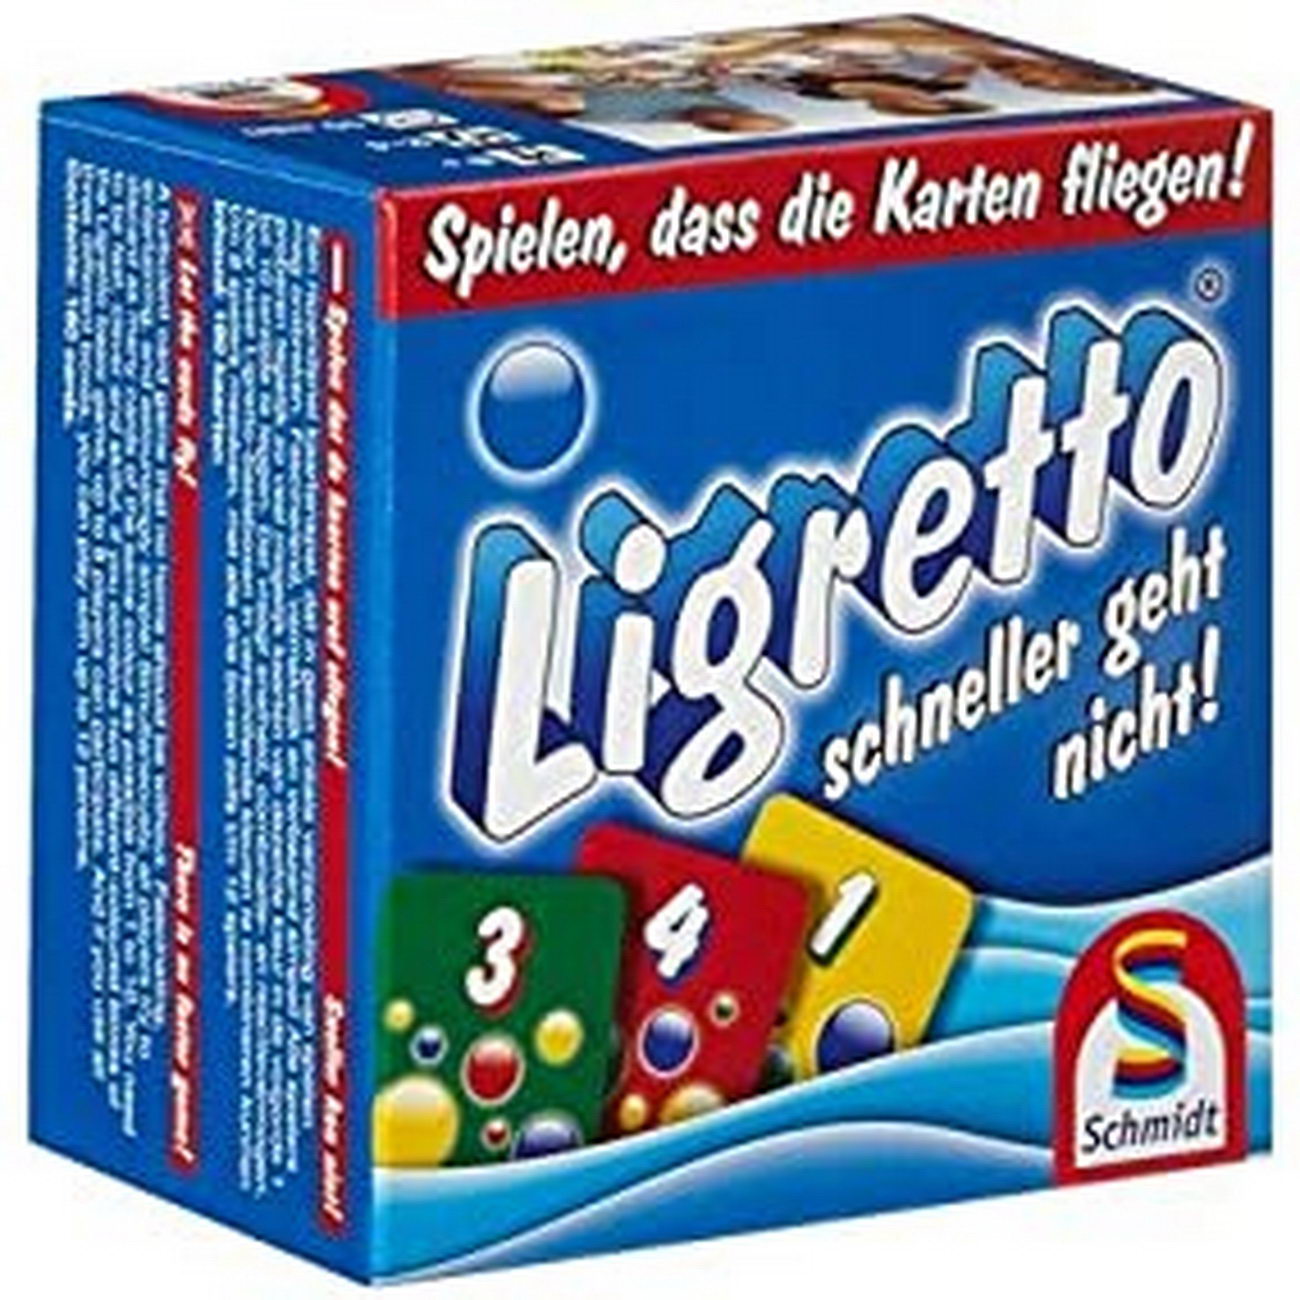 Ligretto blau (Schmidt Spiele 1101)